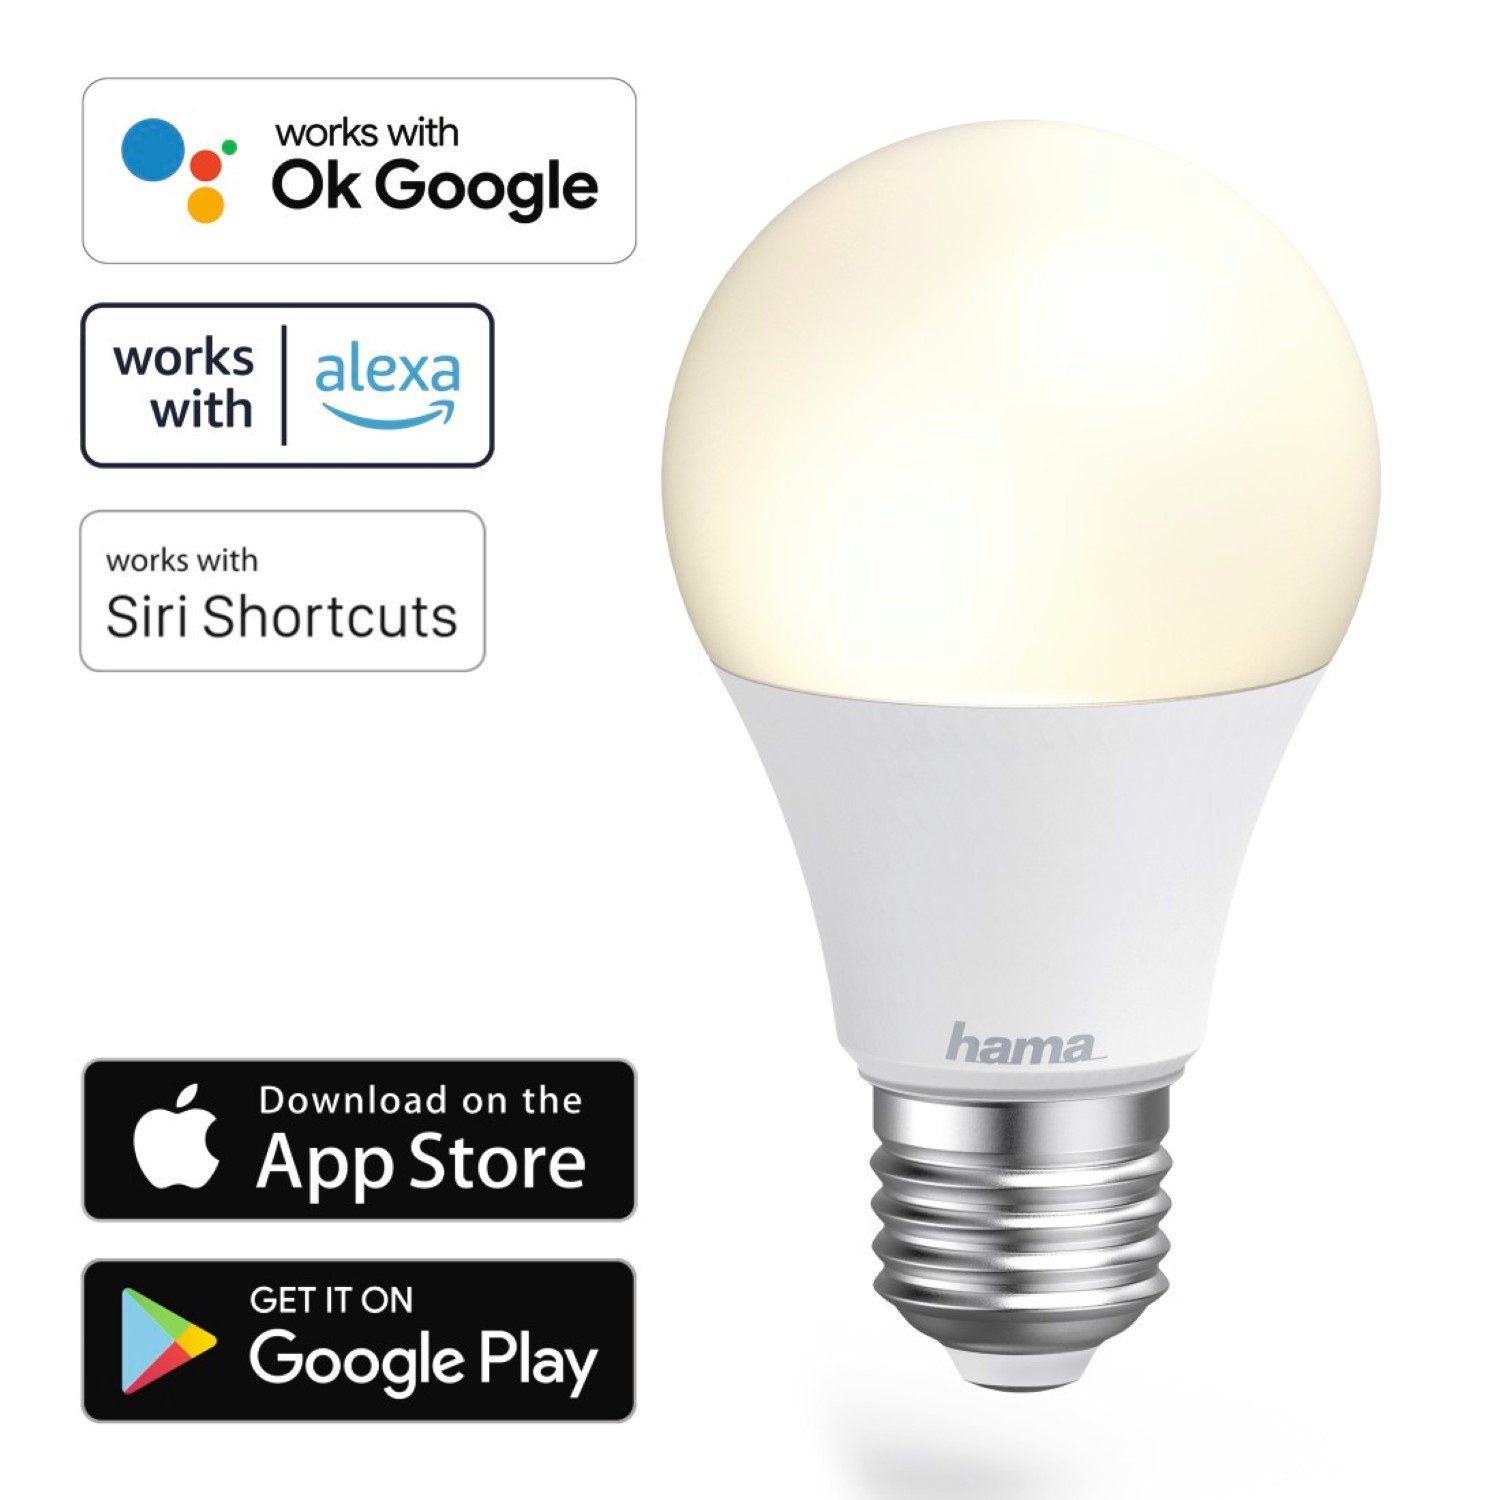 Hama Hängeleuchten »WLAN LED-Lampe E27 10W 60W Birne Dimmbar«, WiFi  Verbindung, 10W = 60W, Smart Home, App-Steuerung auch Sprachsteuerung  passend für Amazon Alexa und Ok Google Assistent online kaufen | OTTO